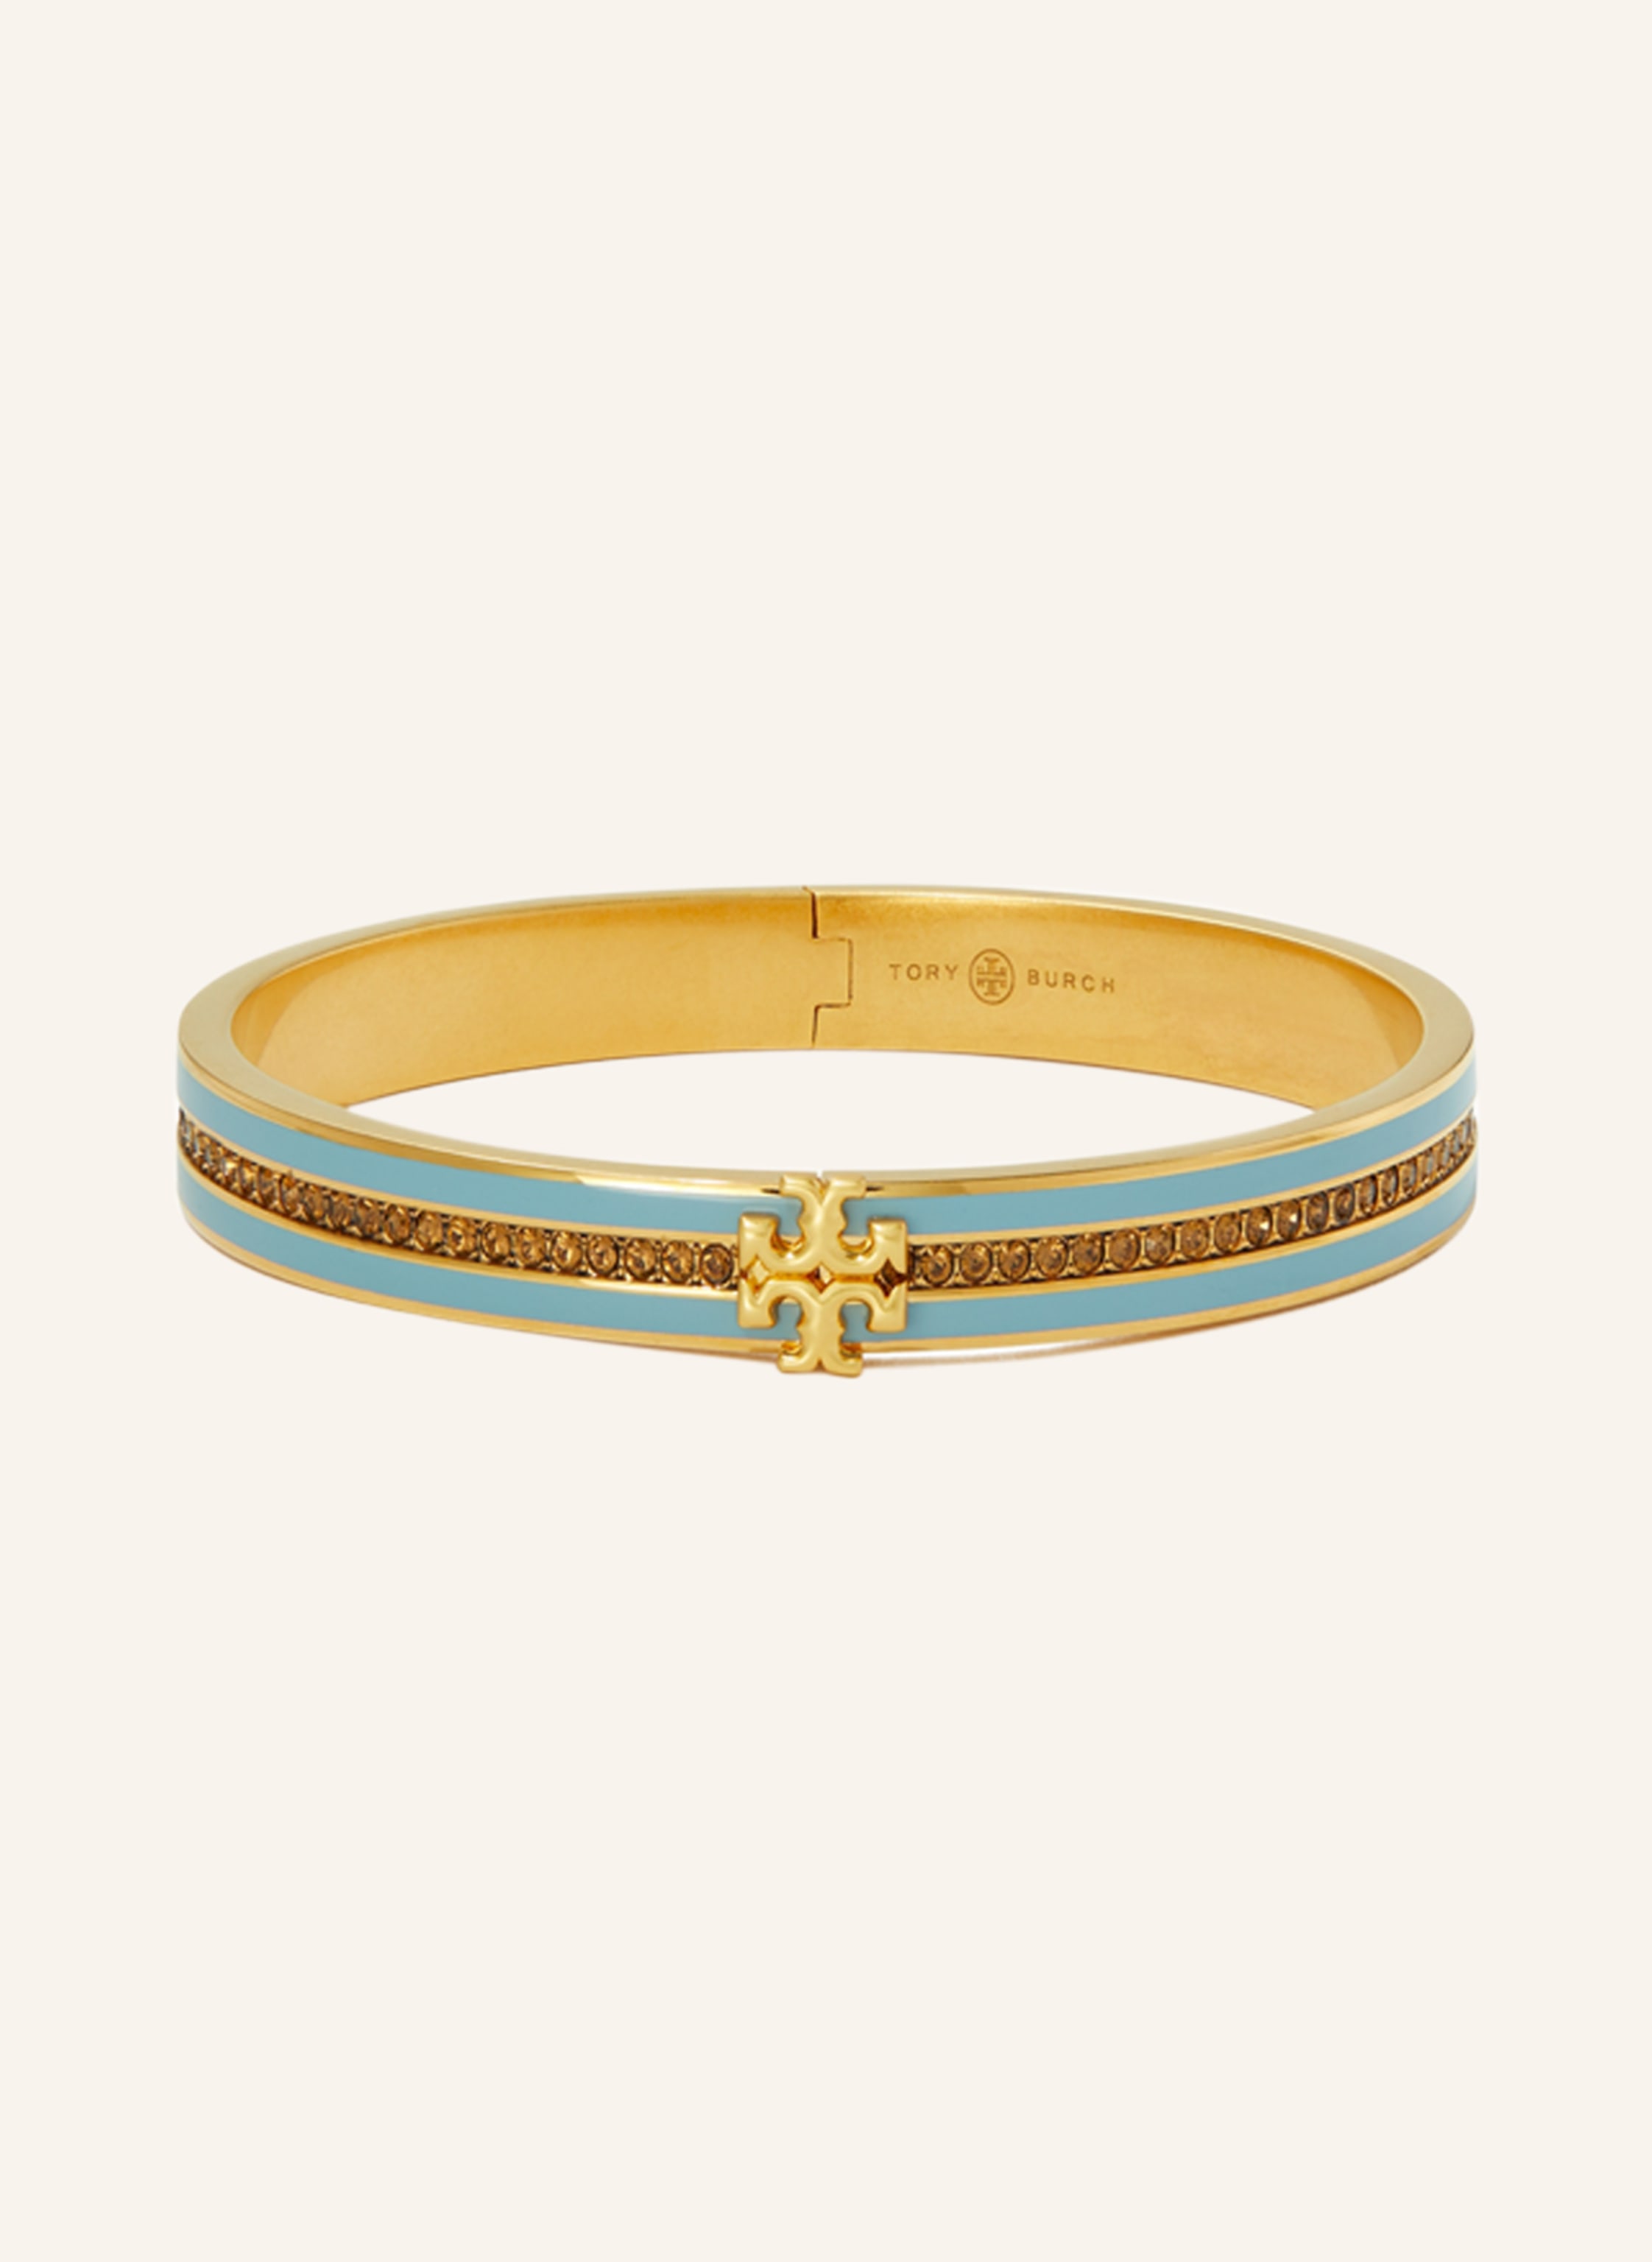 TORY BURCH Bracelet KIRA in light blue/ gold | Breuninger